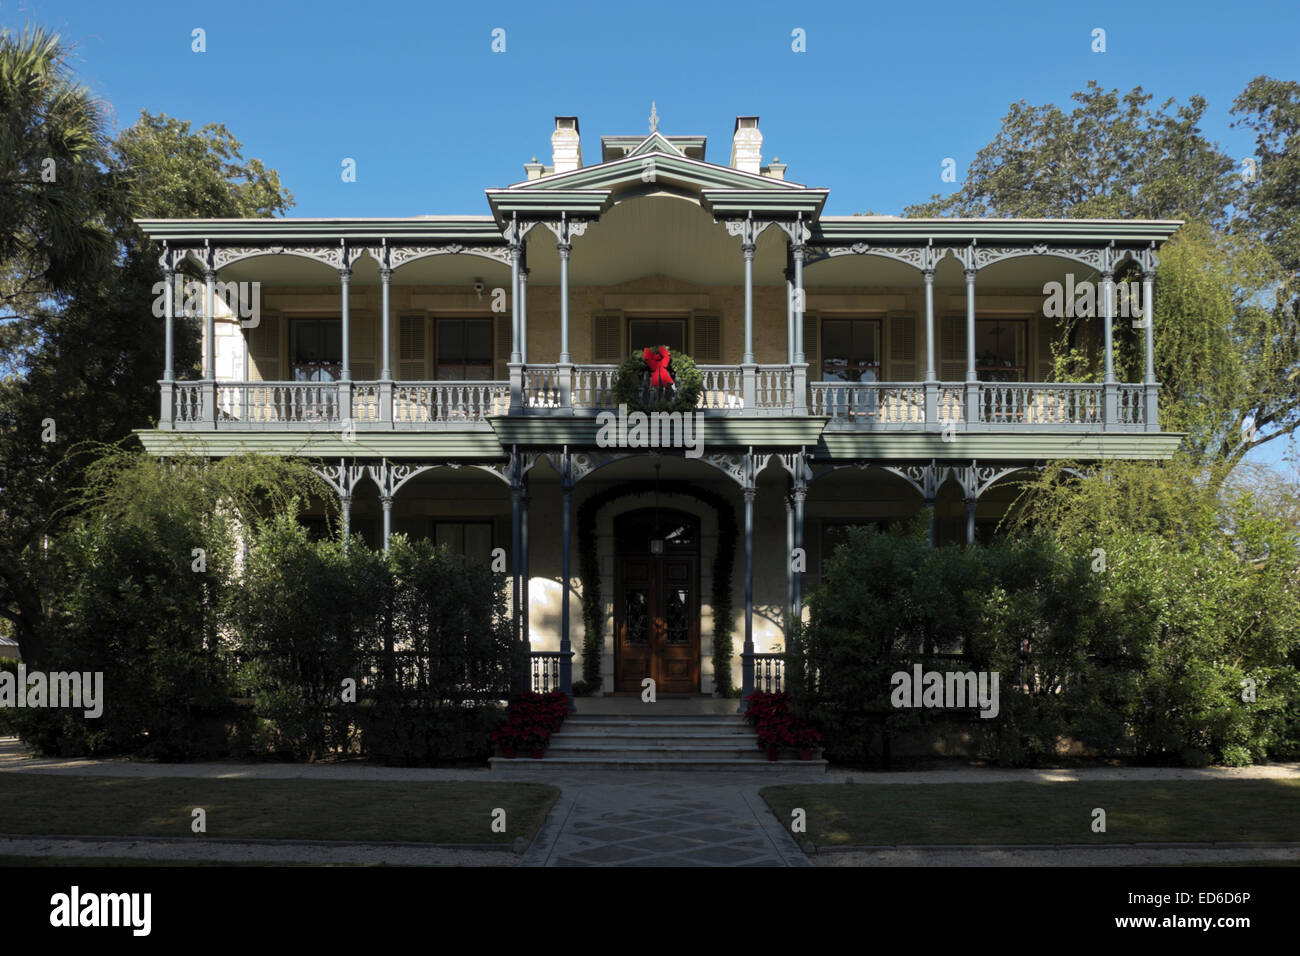 Carl Wilhelm August Groos Haus im historischen King William District in San Antonio, Texas. Stockfoto